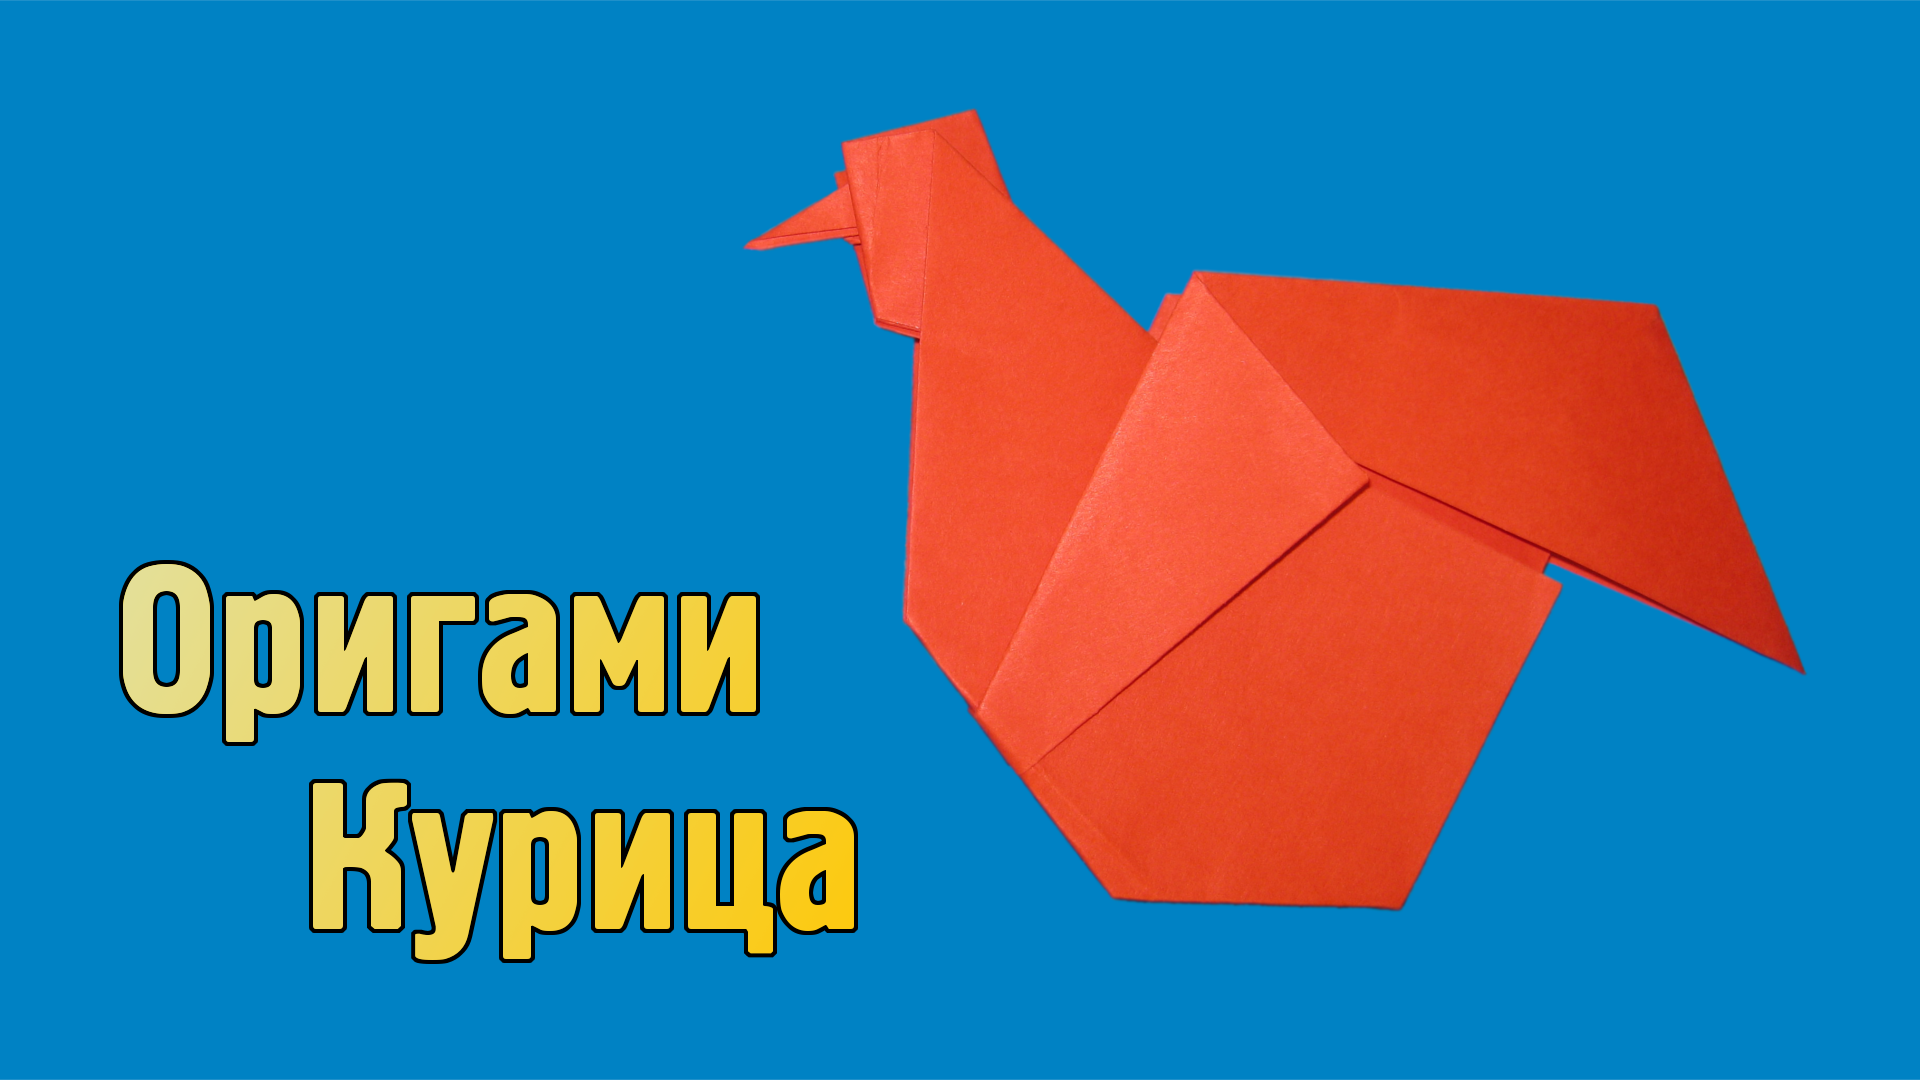 Как сделать Курицу из бумаги своими руками | Оригами Курица для детей | Фигурка Птицы без клея